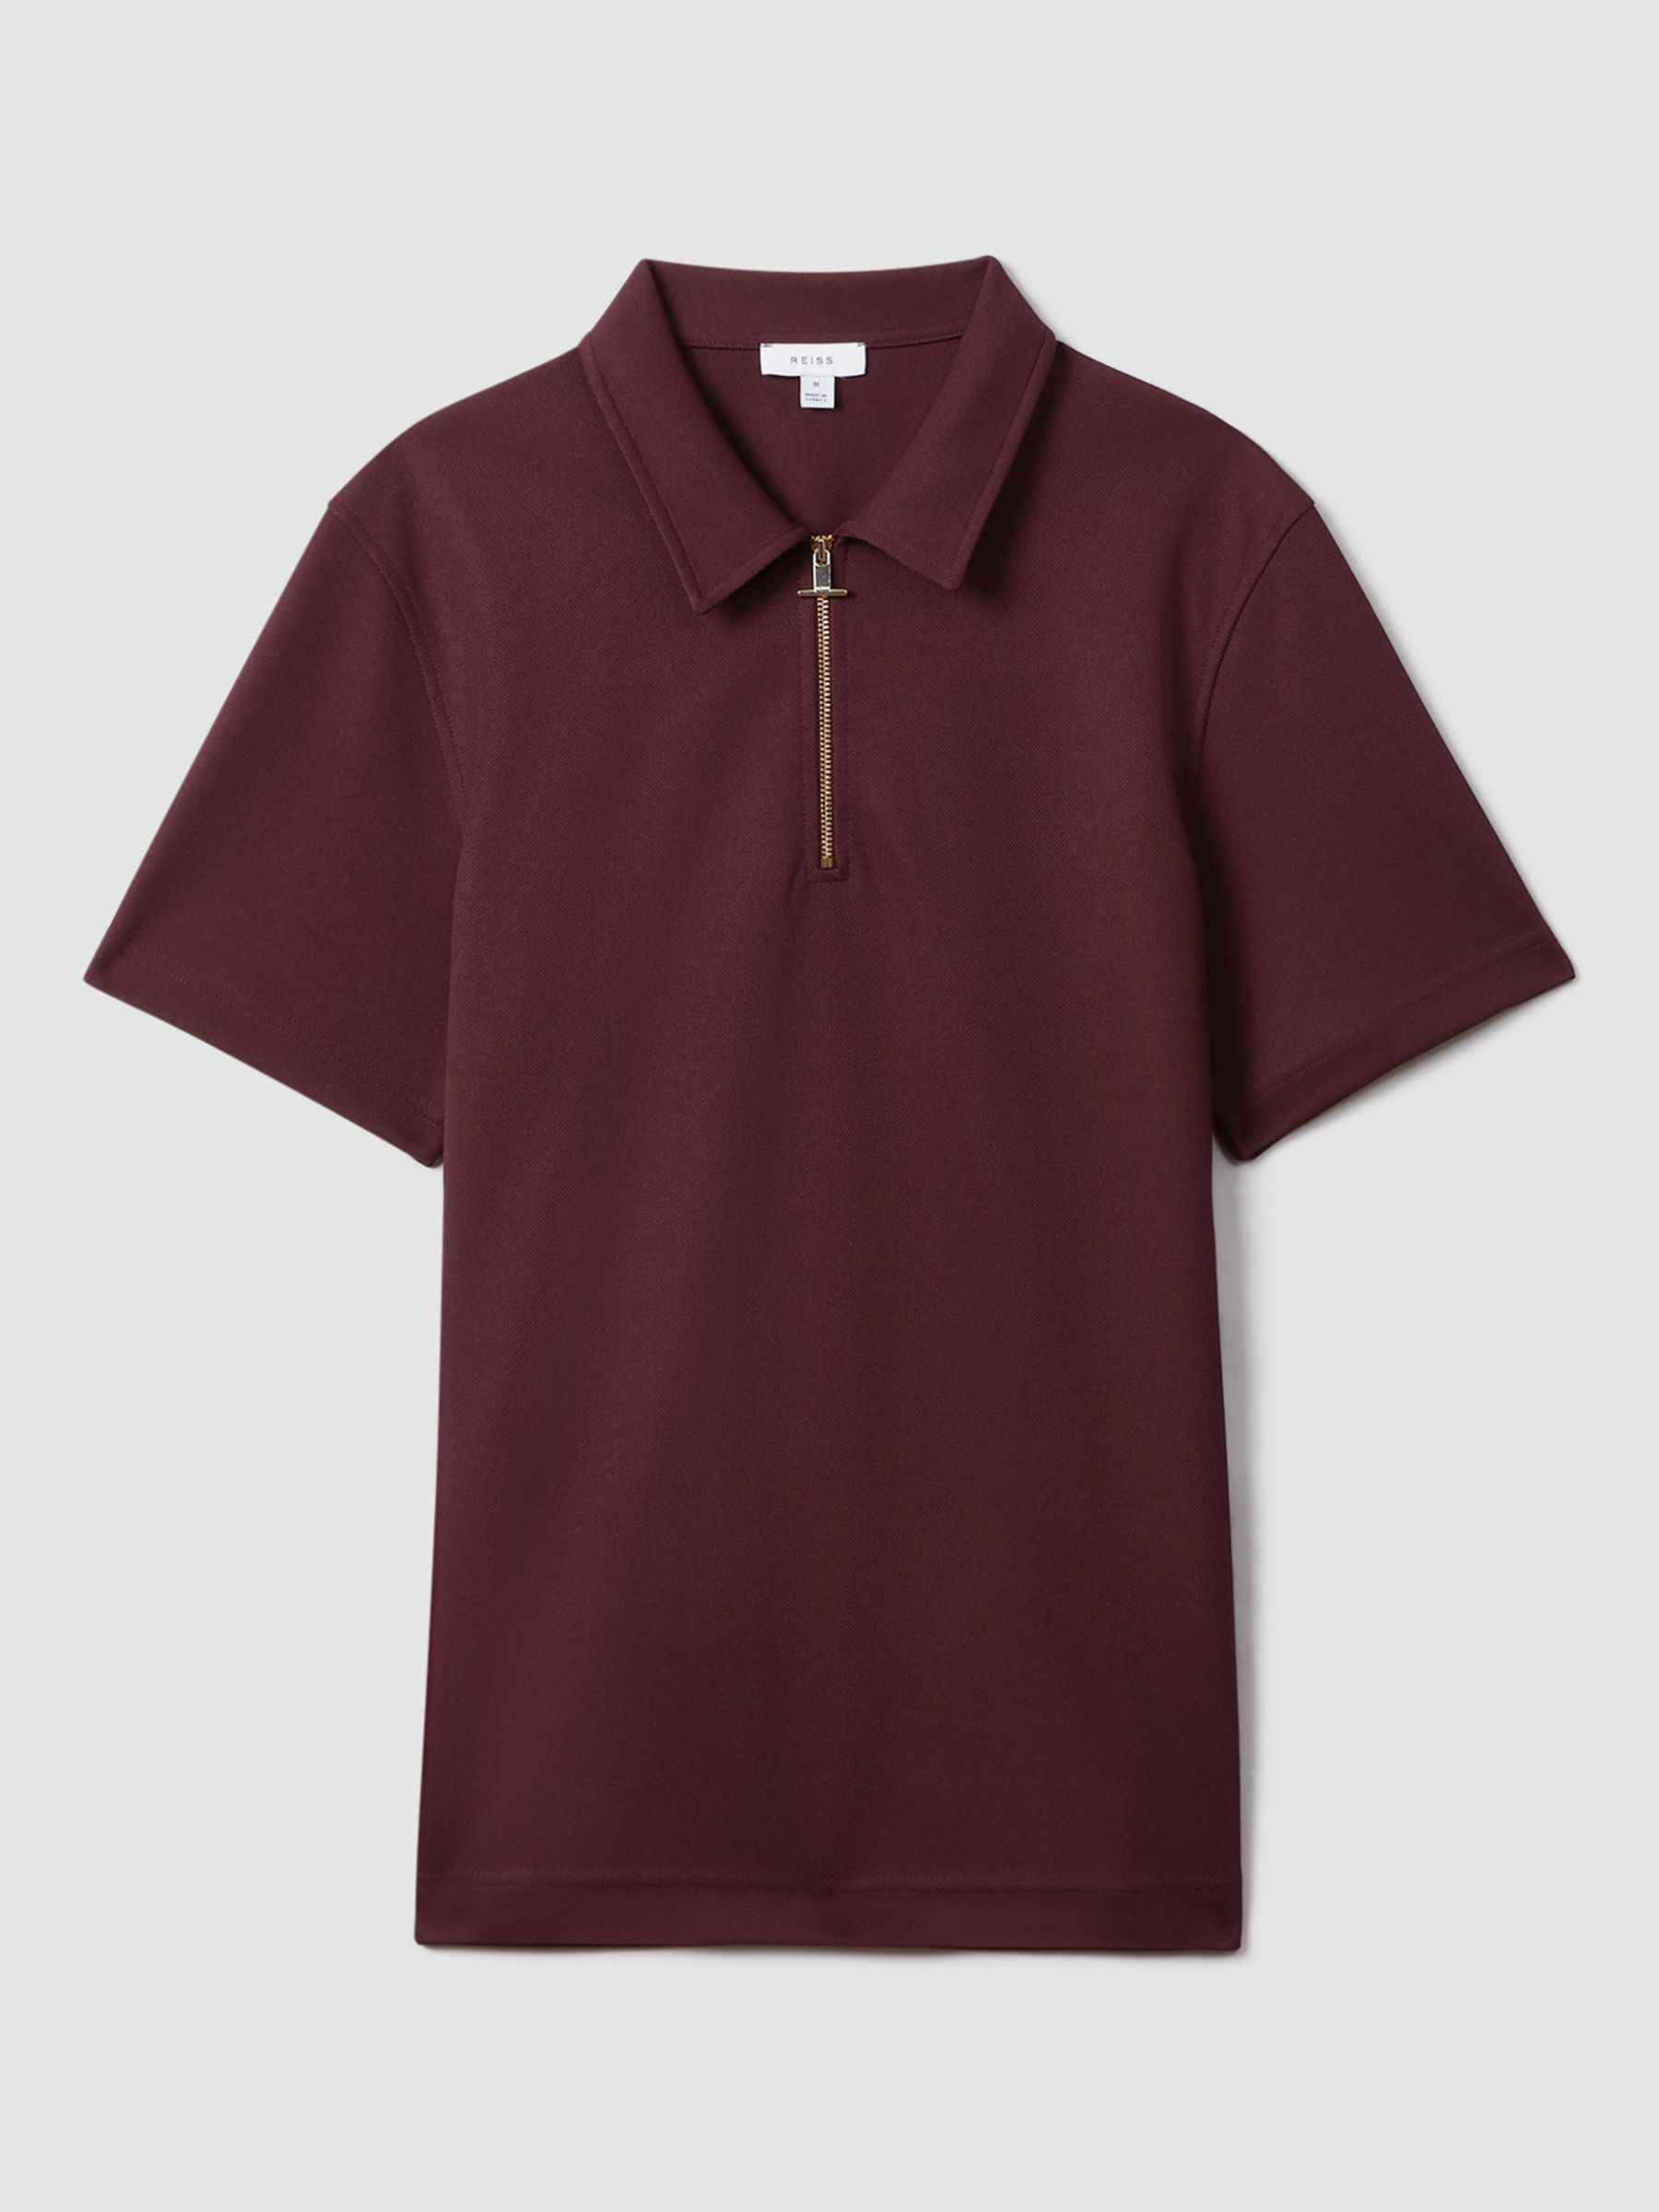 Reiss Floyd Half Zip Textured Polo Shirt, Bordeaux, XS